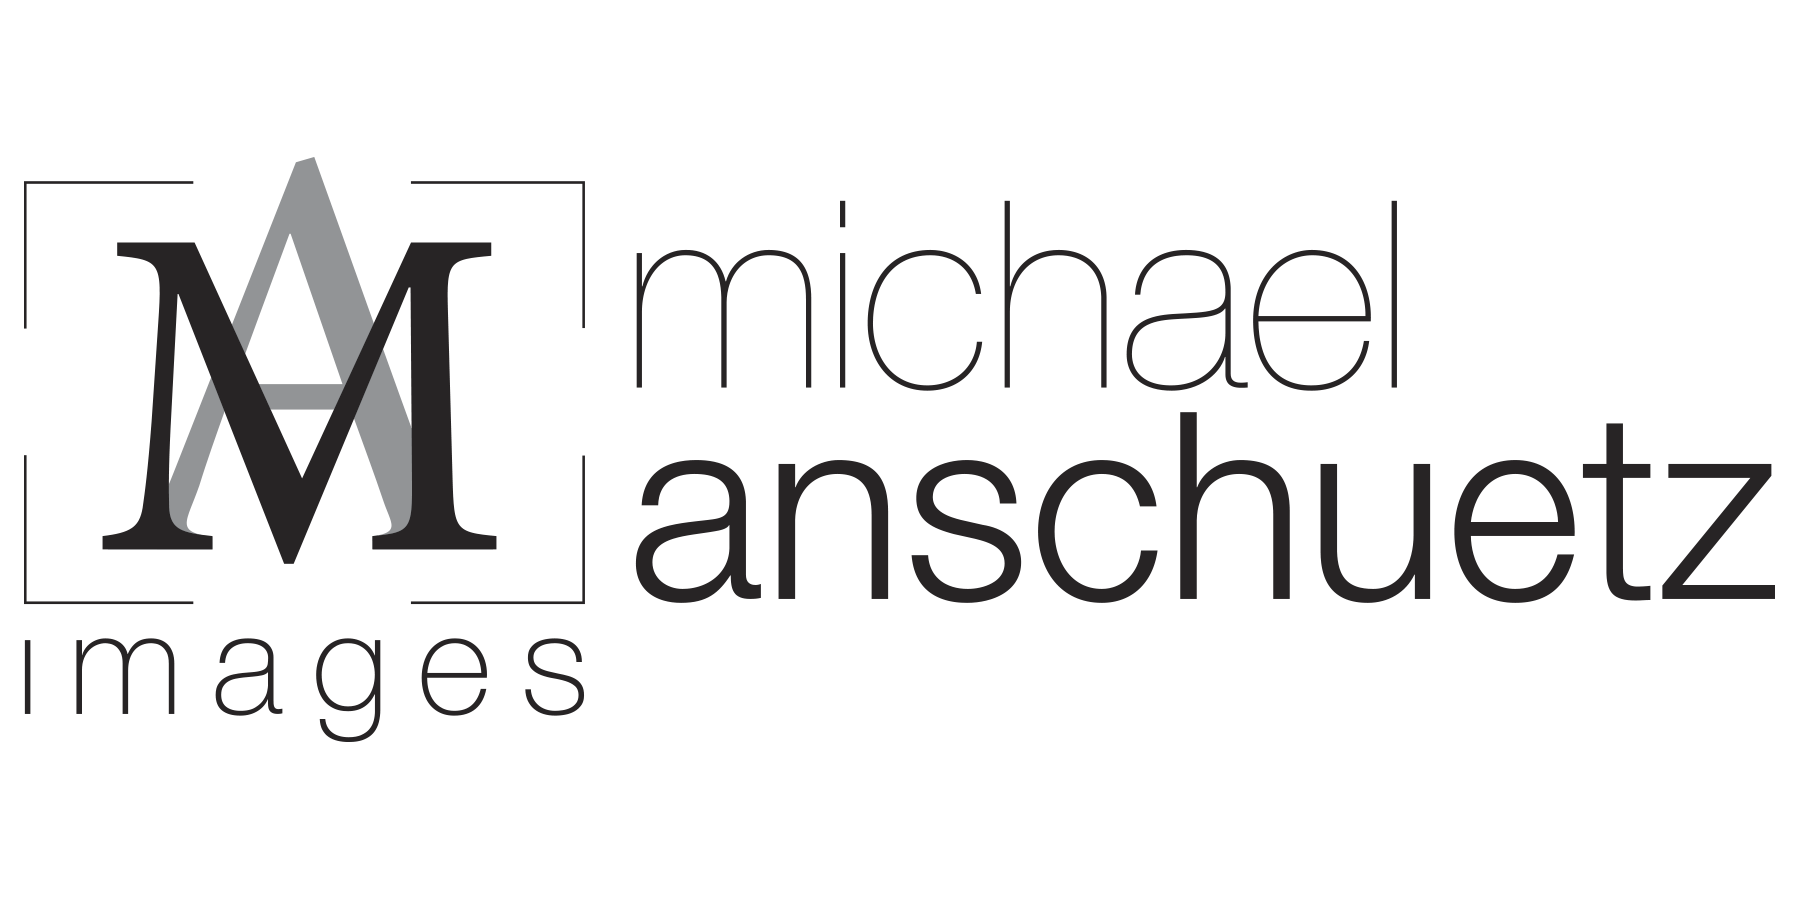 Anschuetz Logo - Michael AnschuetzContact - Michael Anschuetz